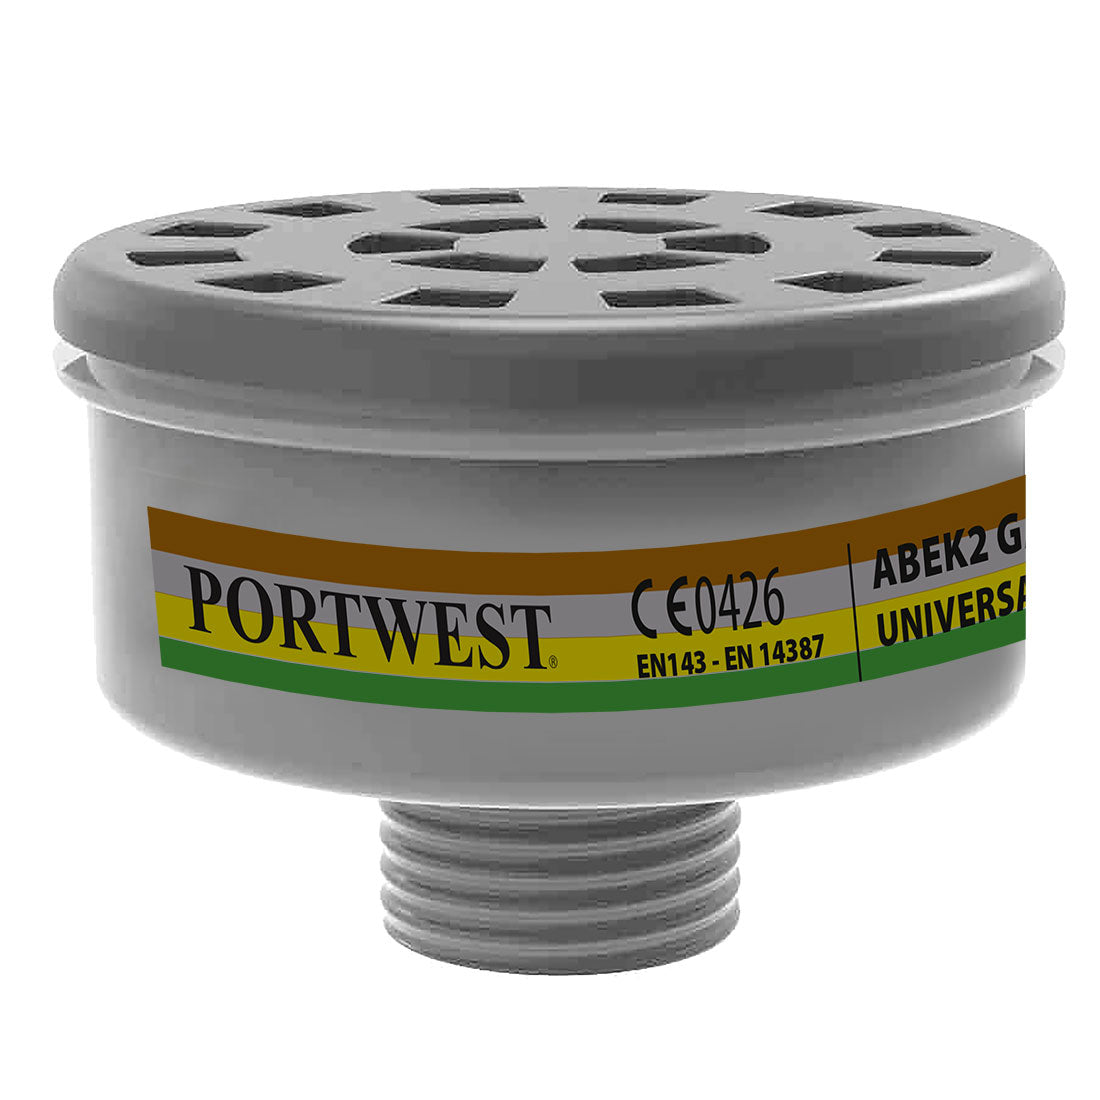 Portwest P926 ABEK2 Gas Filter Universal Tread 1#colour_black